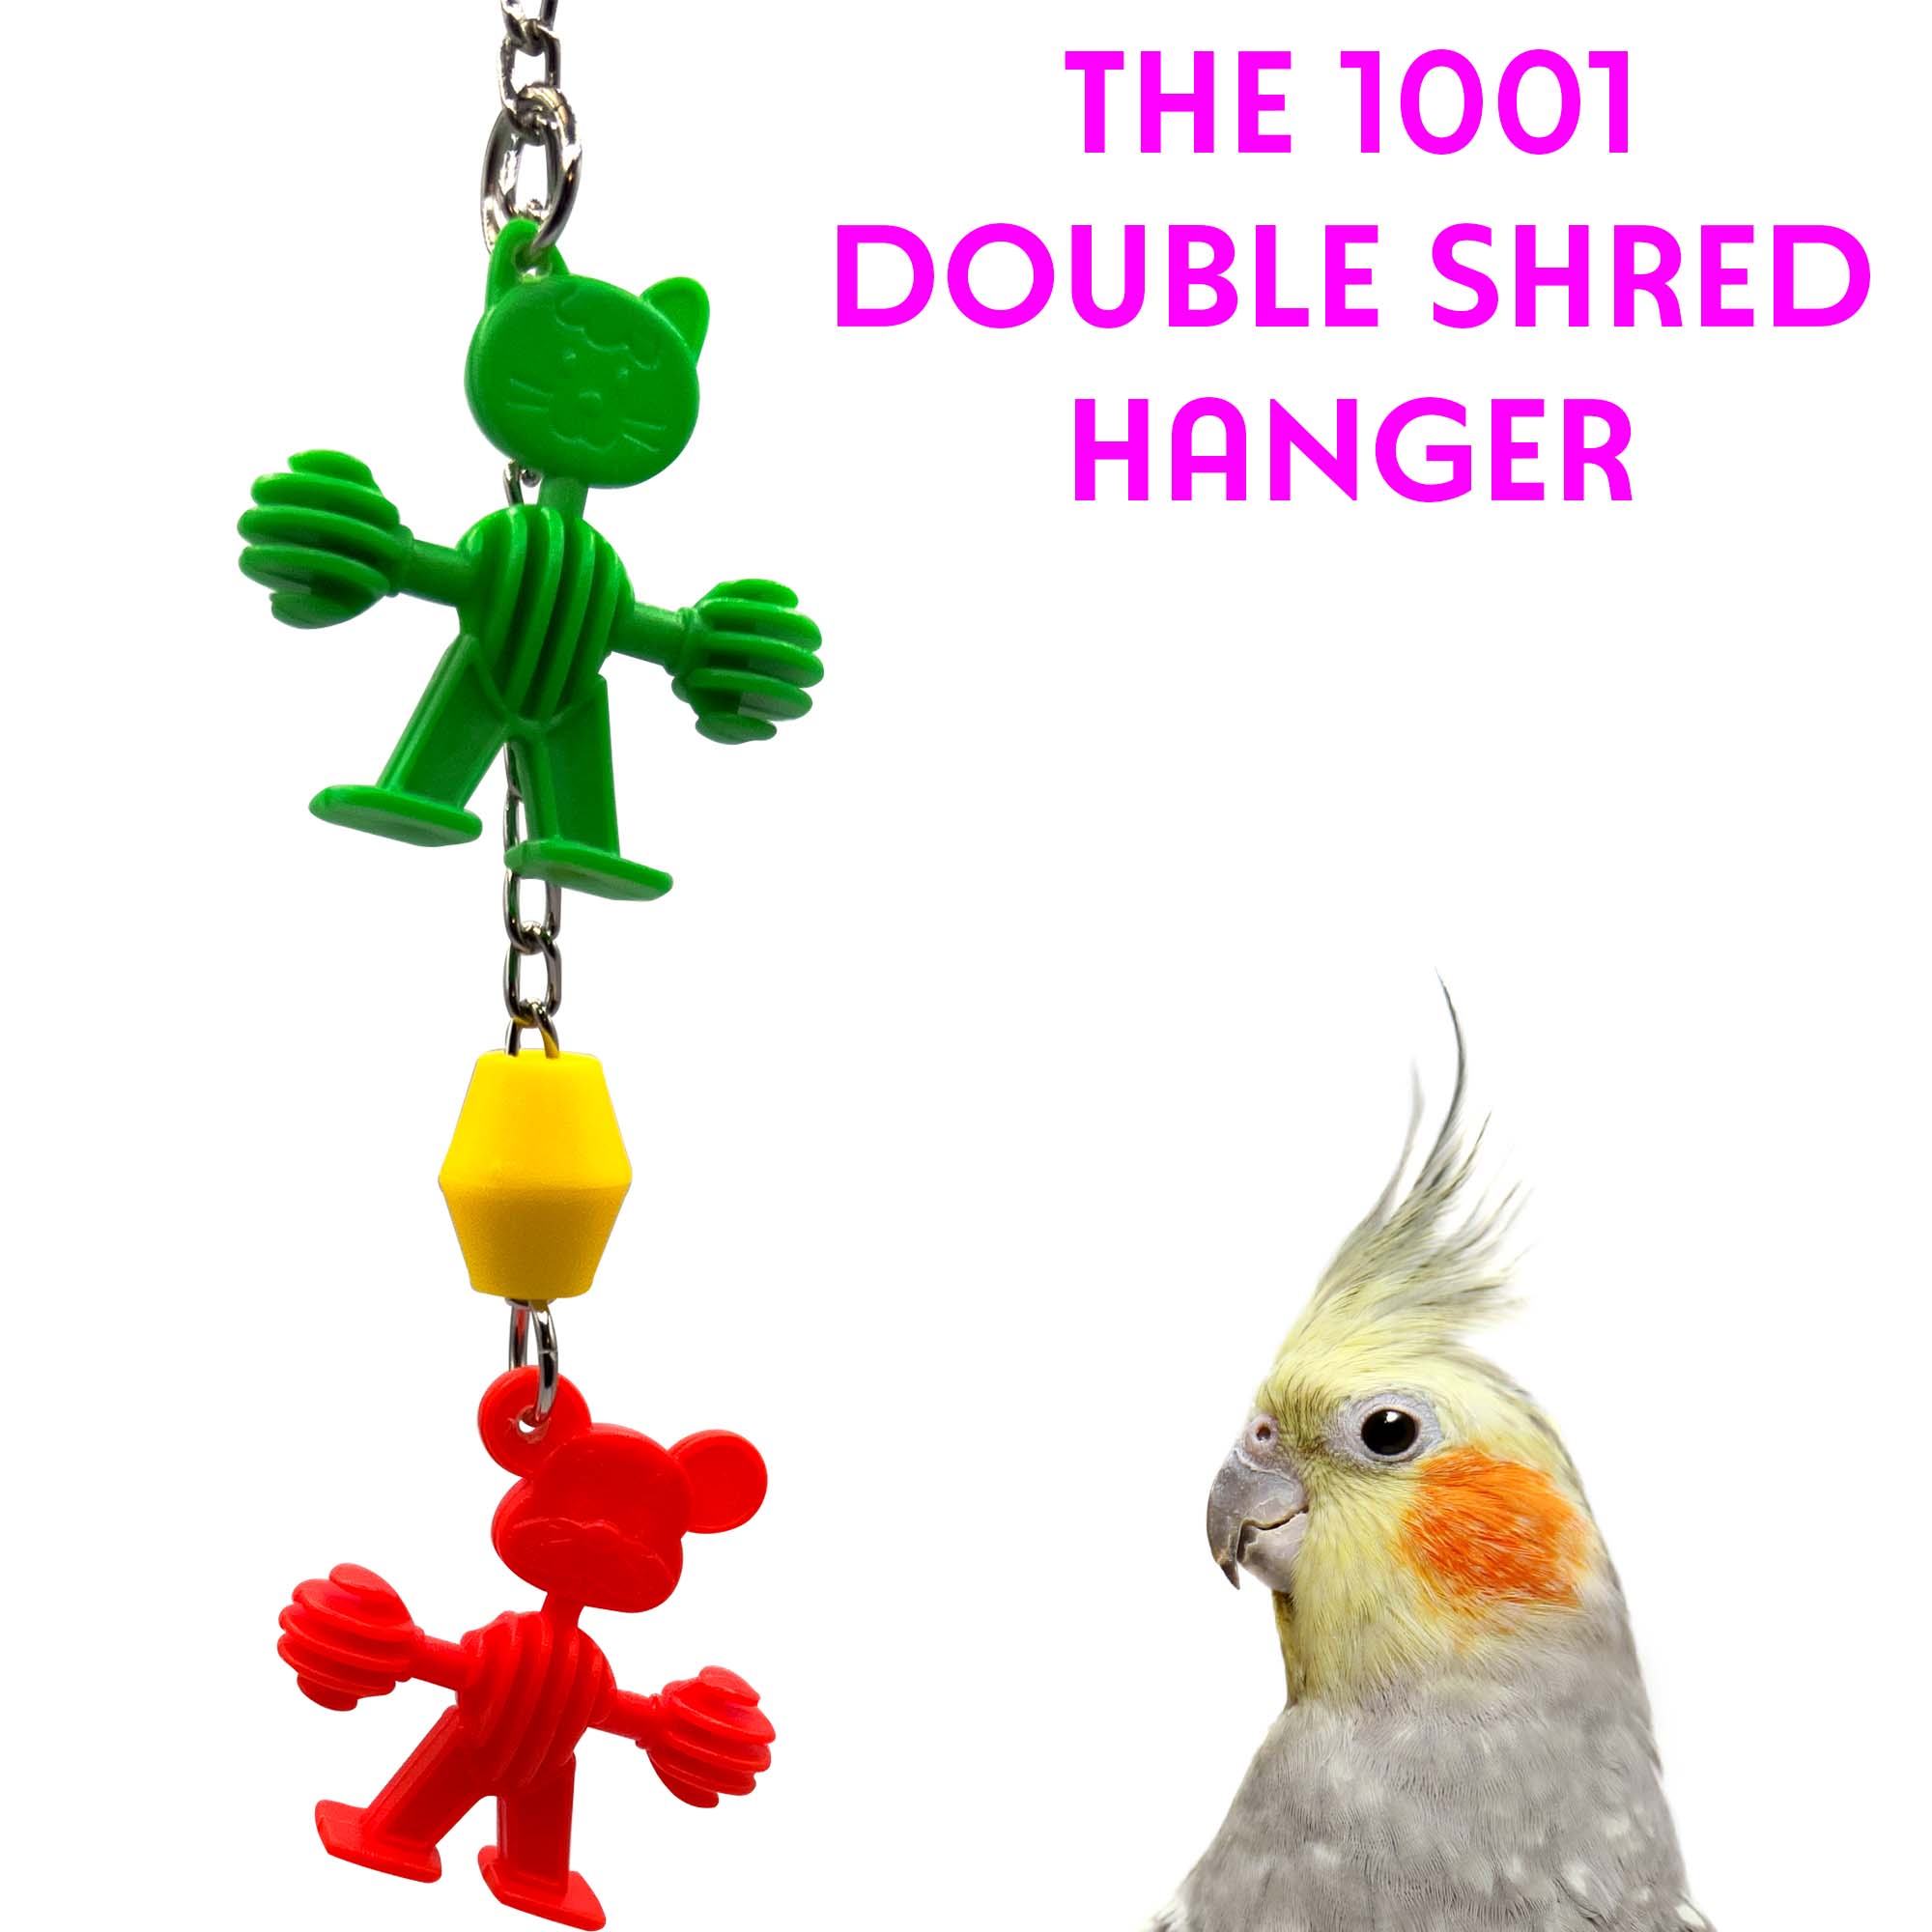 1001 Double Shred Hanger